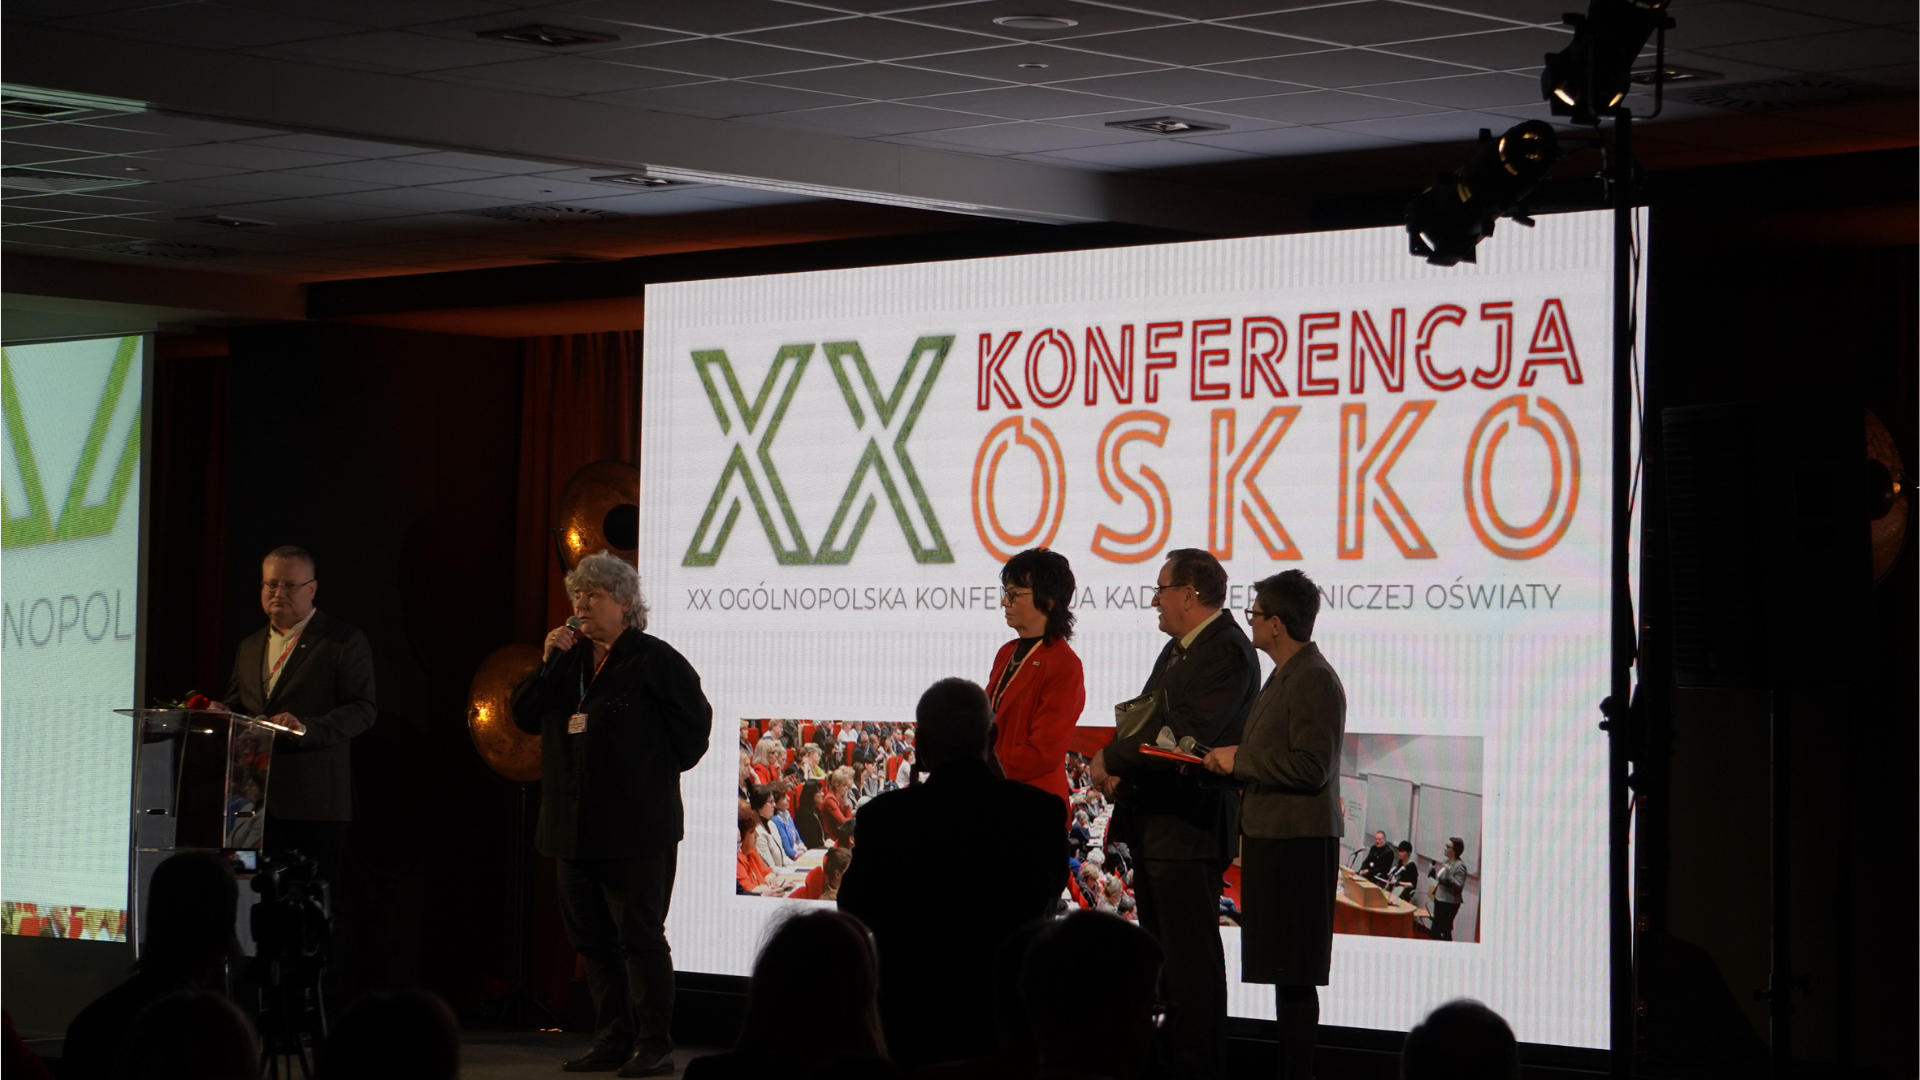 otwarcie konferencji - ekran z logo wydarzenia